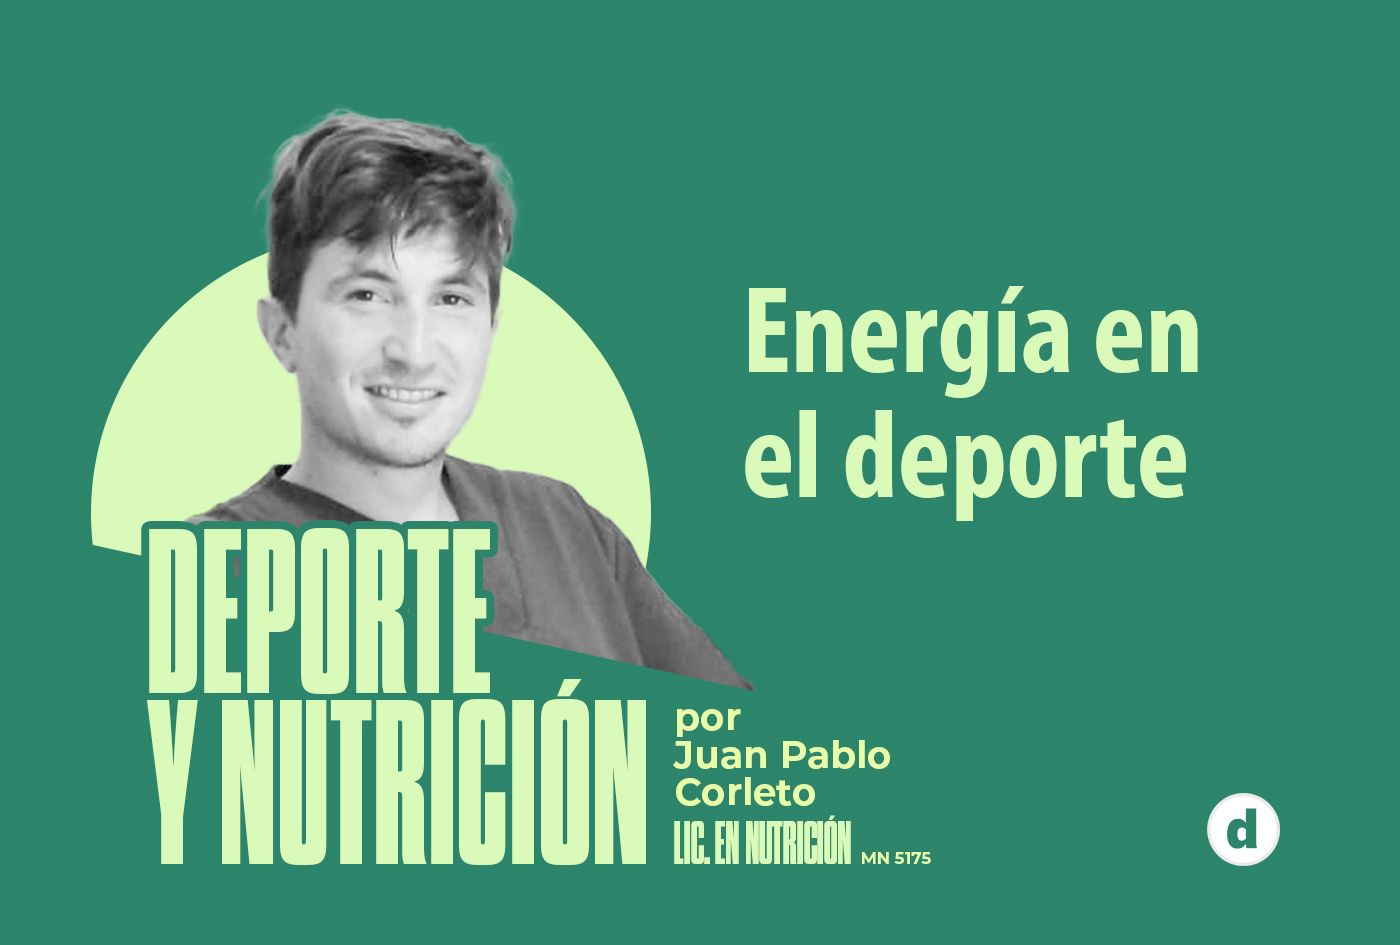 La columna del nutricionista Juan Pablo Corleto: “Energía en el deporte”